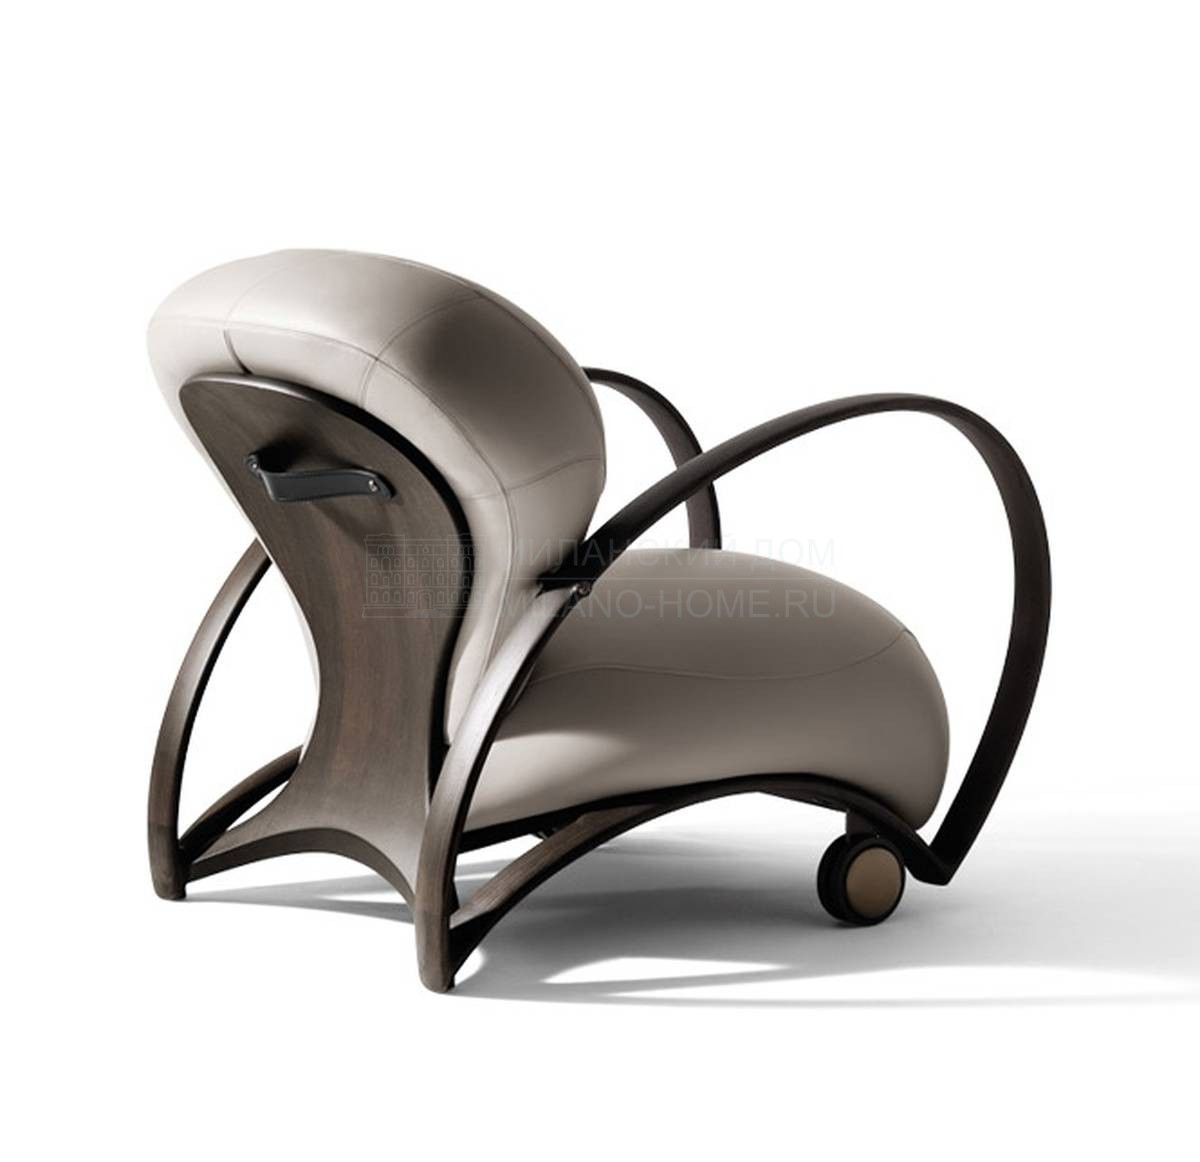 Кожаное кресло Branca / 69900 из Италии фабрики GIORGETTI